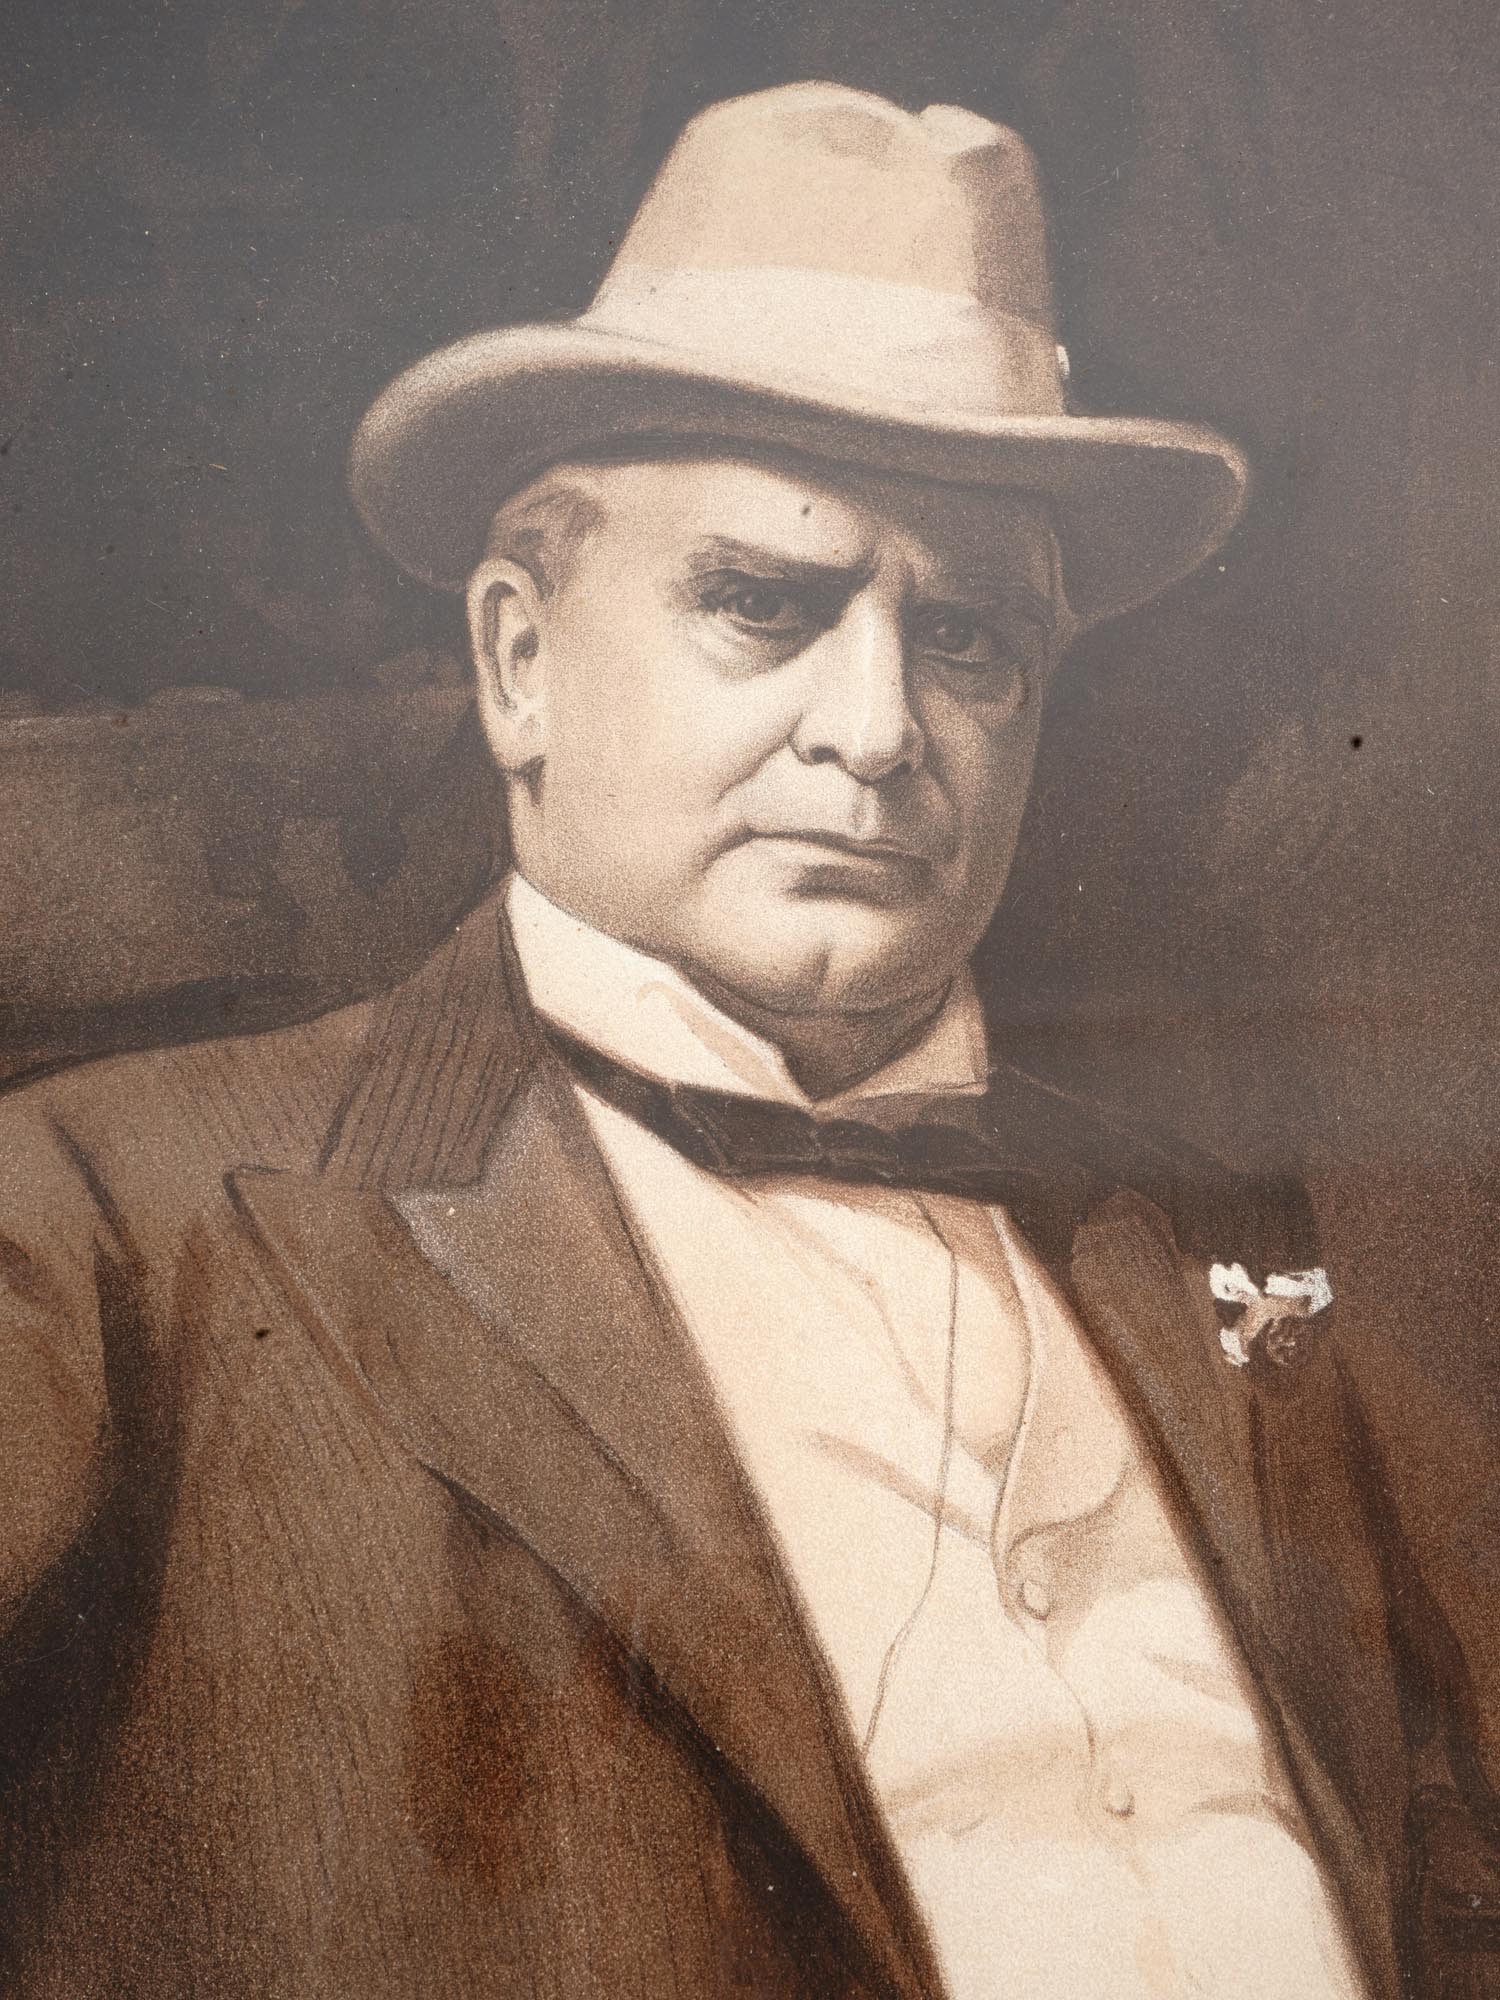 ANTIQUE 1901 PHOTO OF PRESIDENT WILLIAM MCKINLEY PIC-1